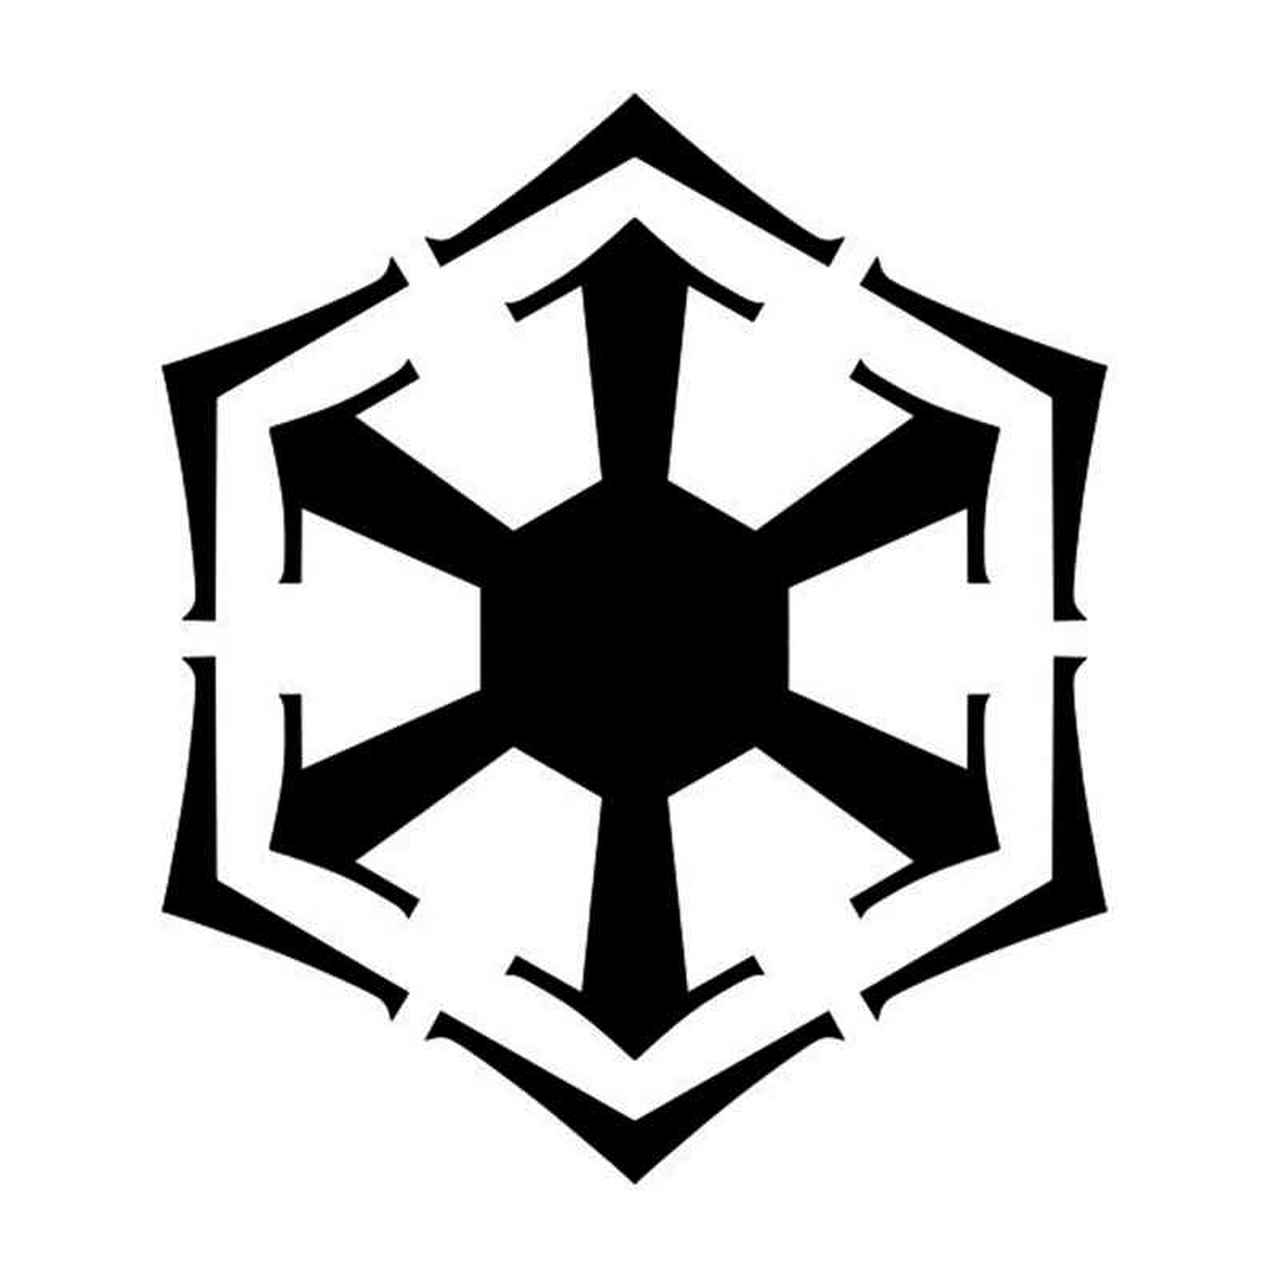 sith order emblem